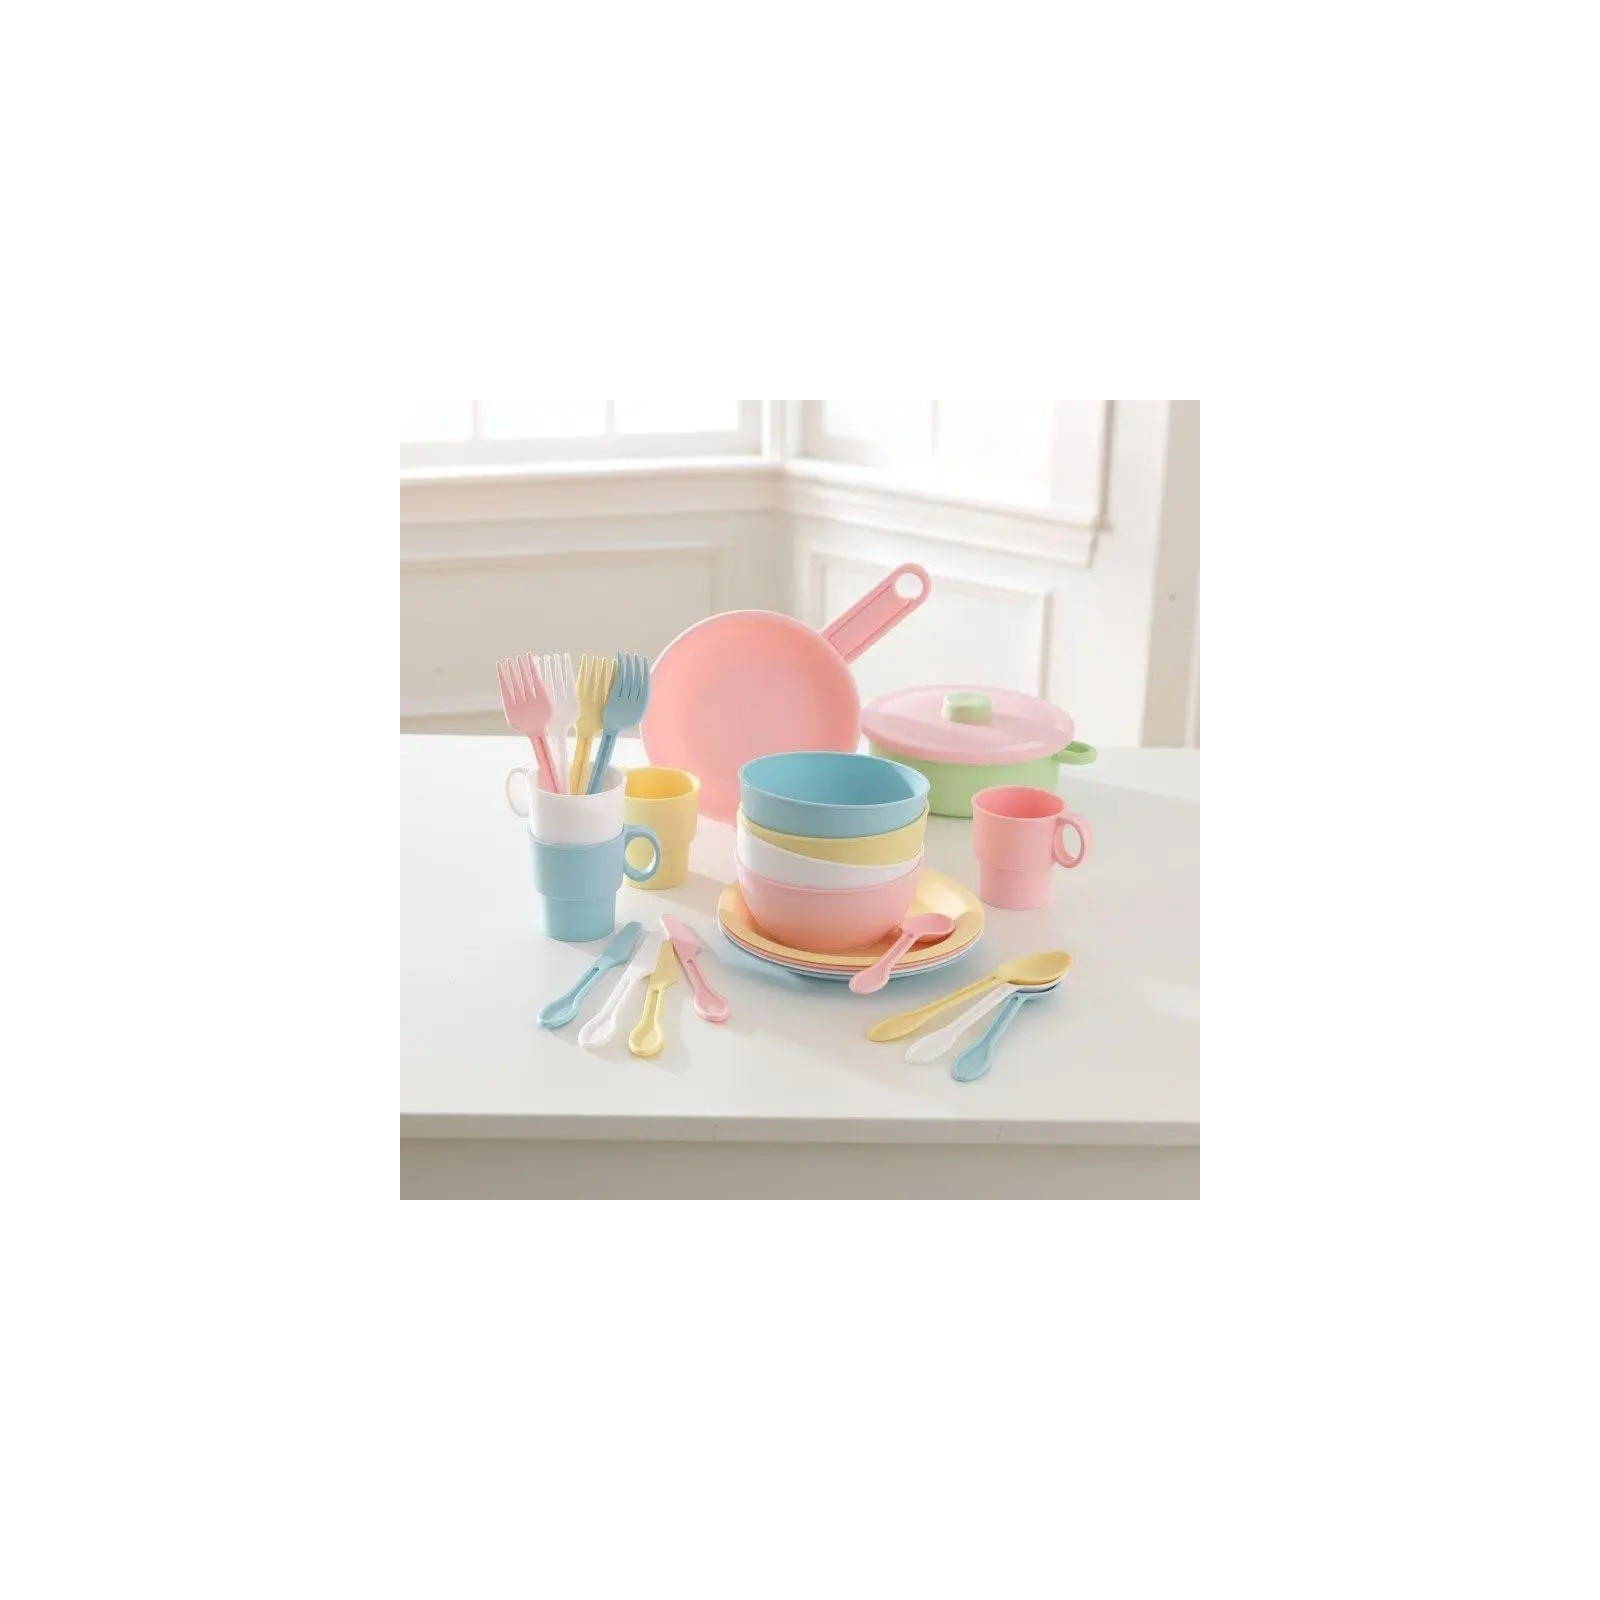 Игровой набор KidKraft набор детской посуды Пастель 27 предметов (63027) изображение 3